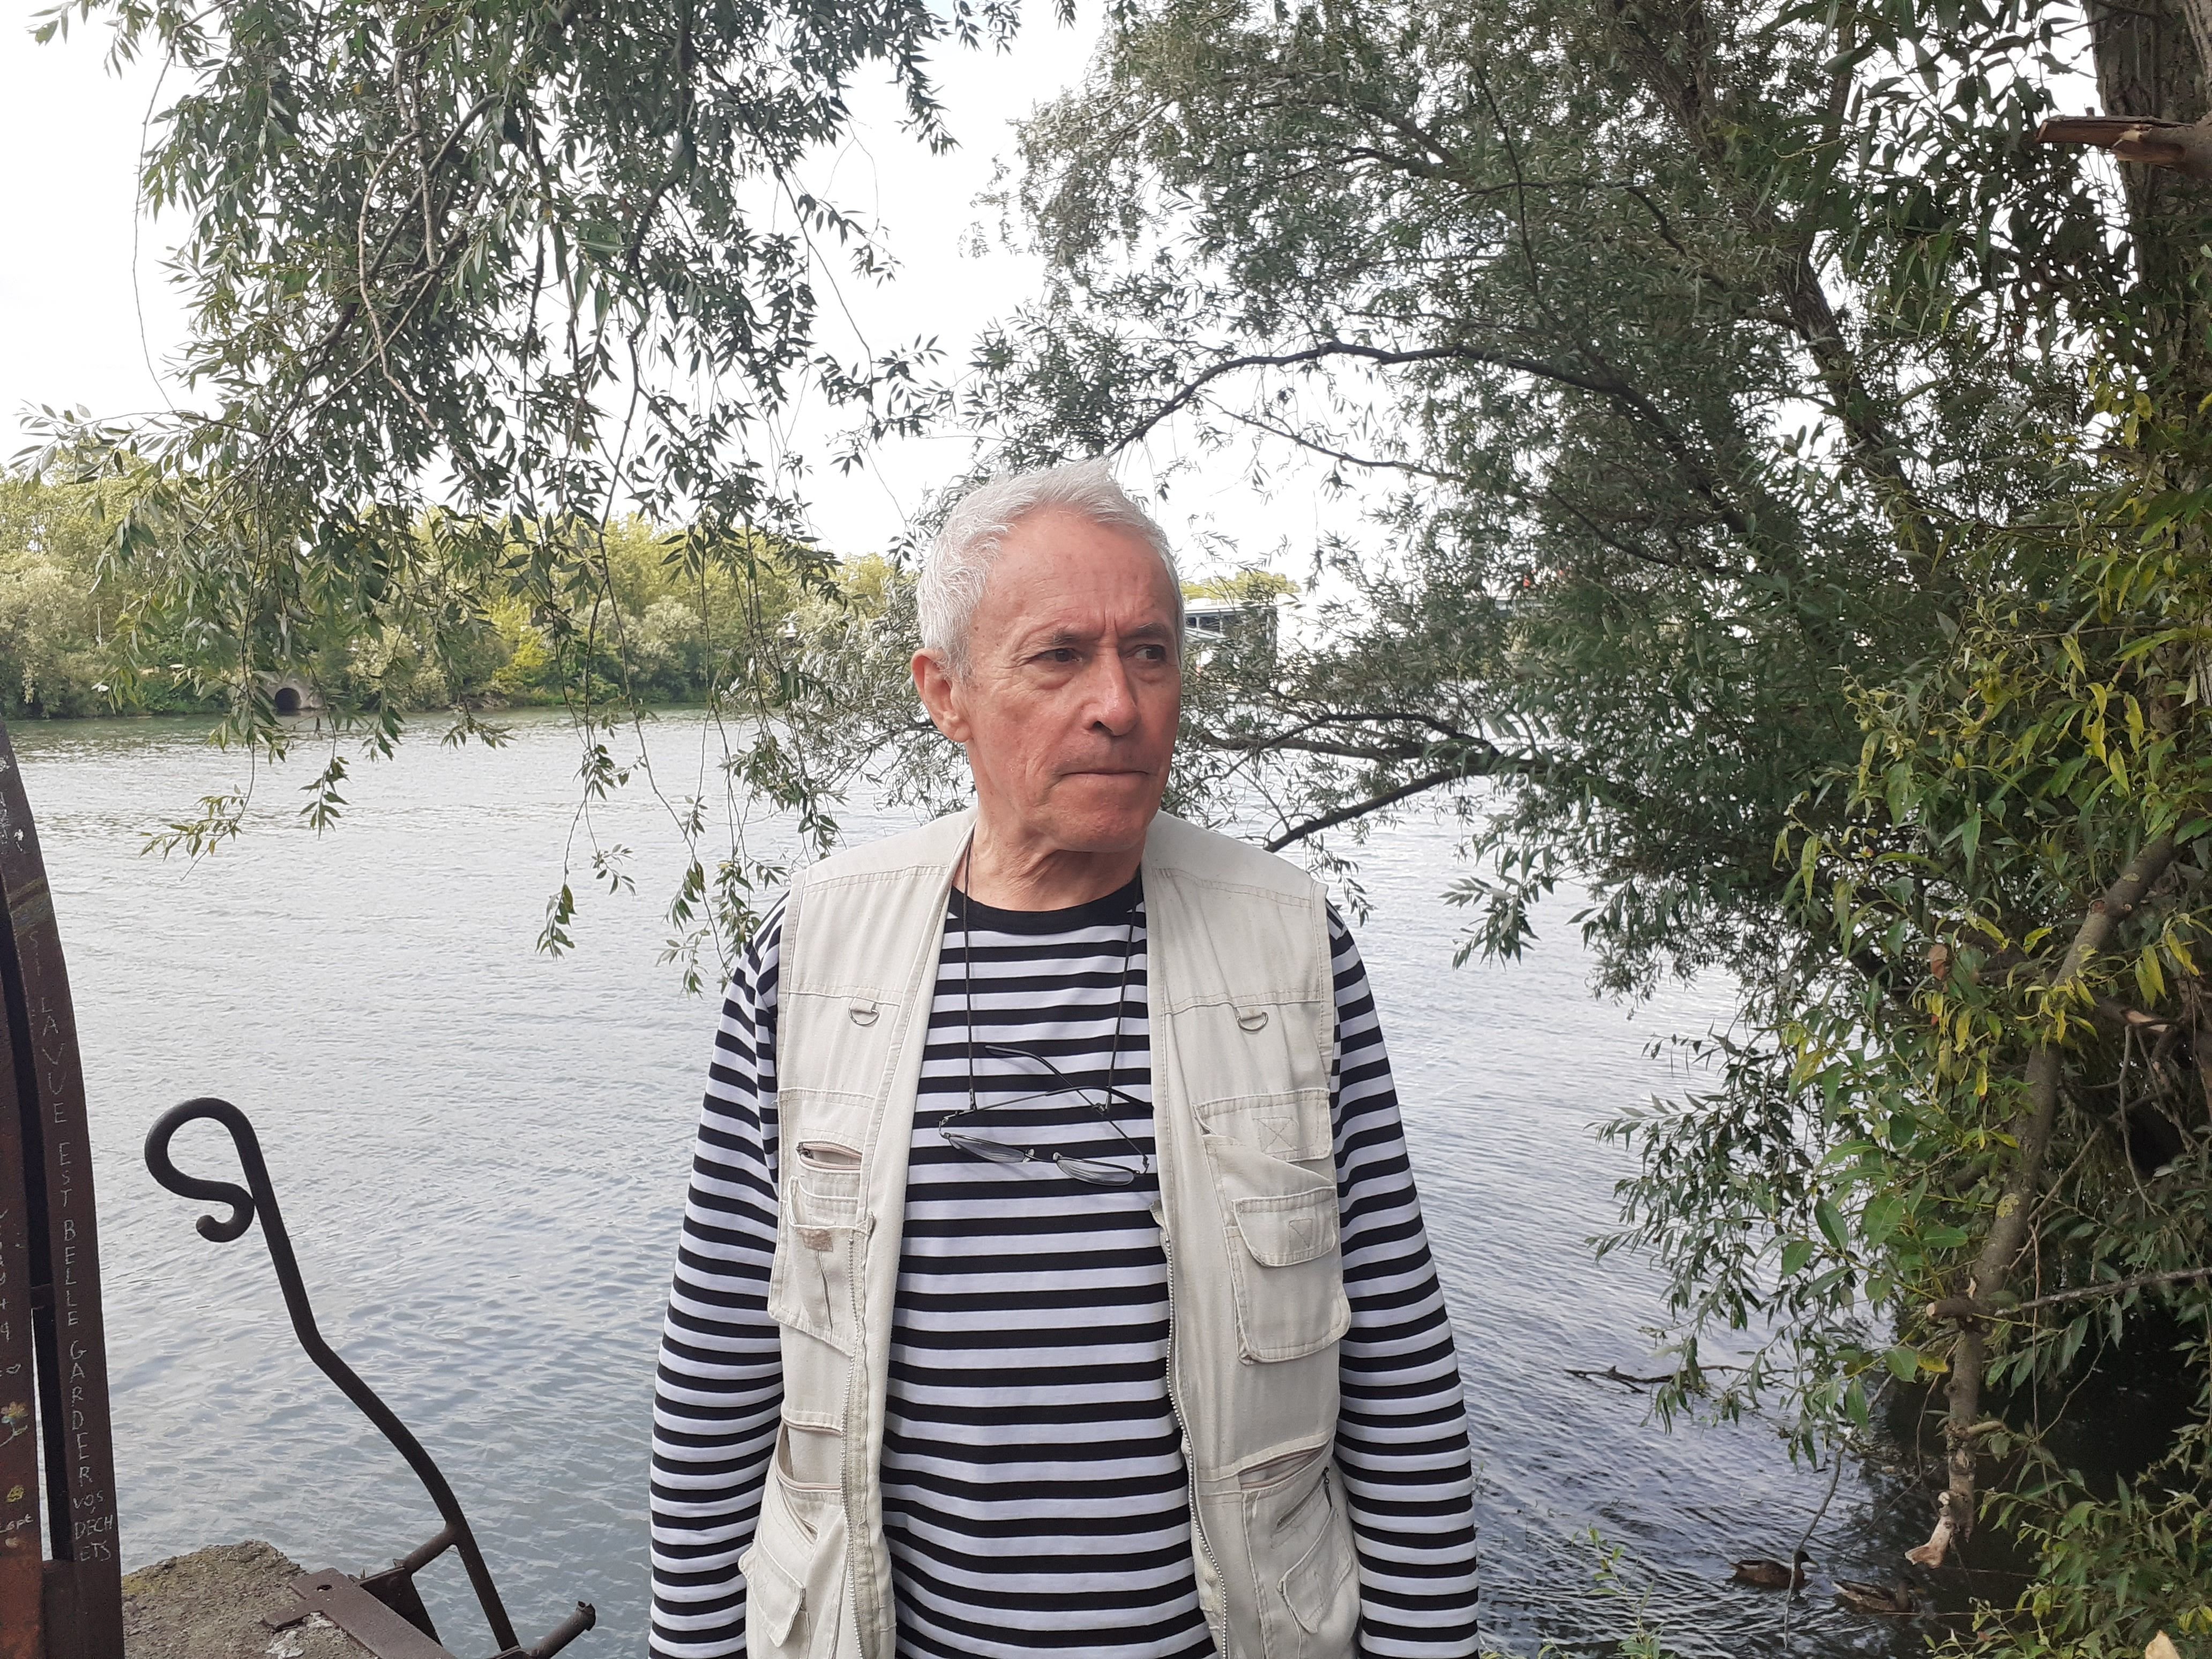 Argenteuil, ce mercredi 16 août. André Pauly, aujourd'hui âgé de 74 ans, vient notamment en aide à des sans-abri installés sur les berges de la Seine. LP/Léo Mesnil.